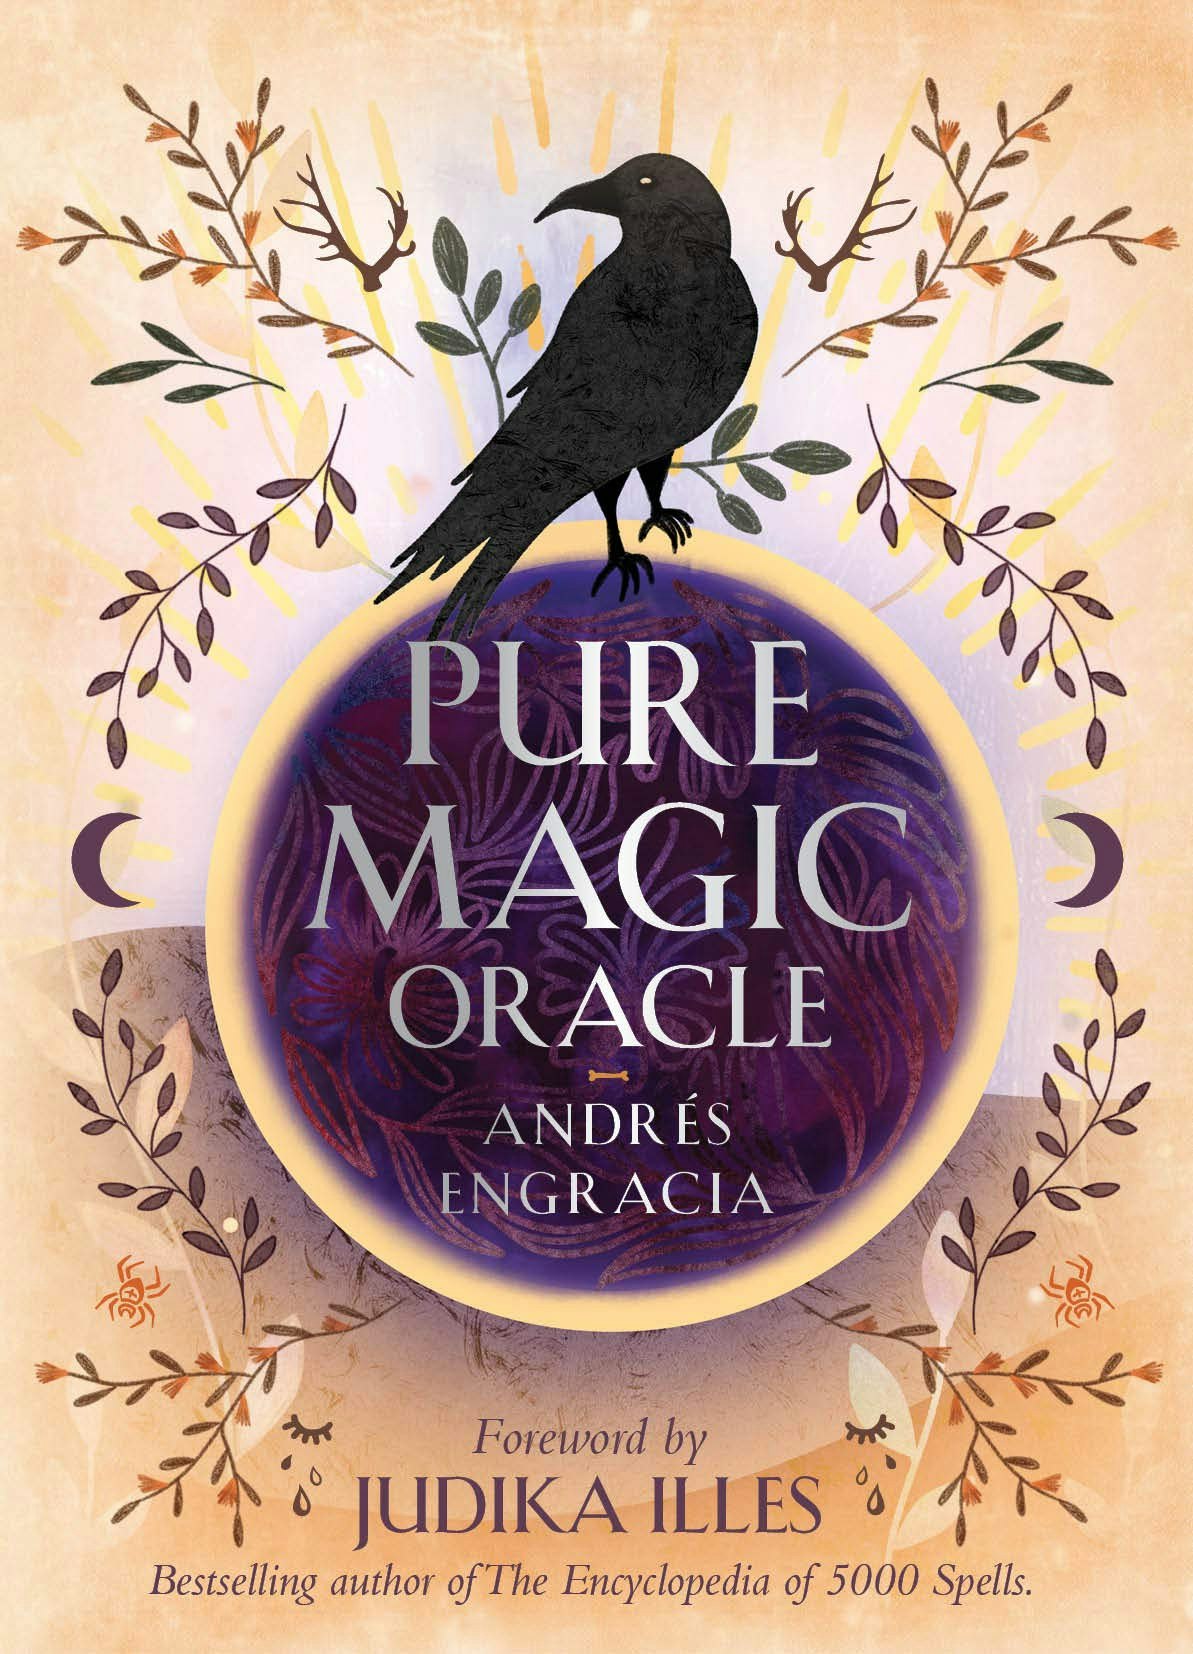 Pure magic, oracle cards, Andrés Angracia